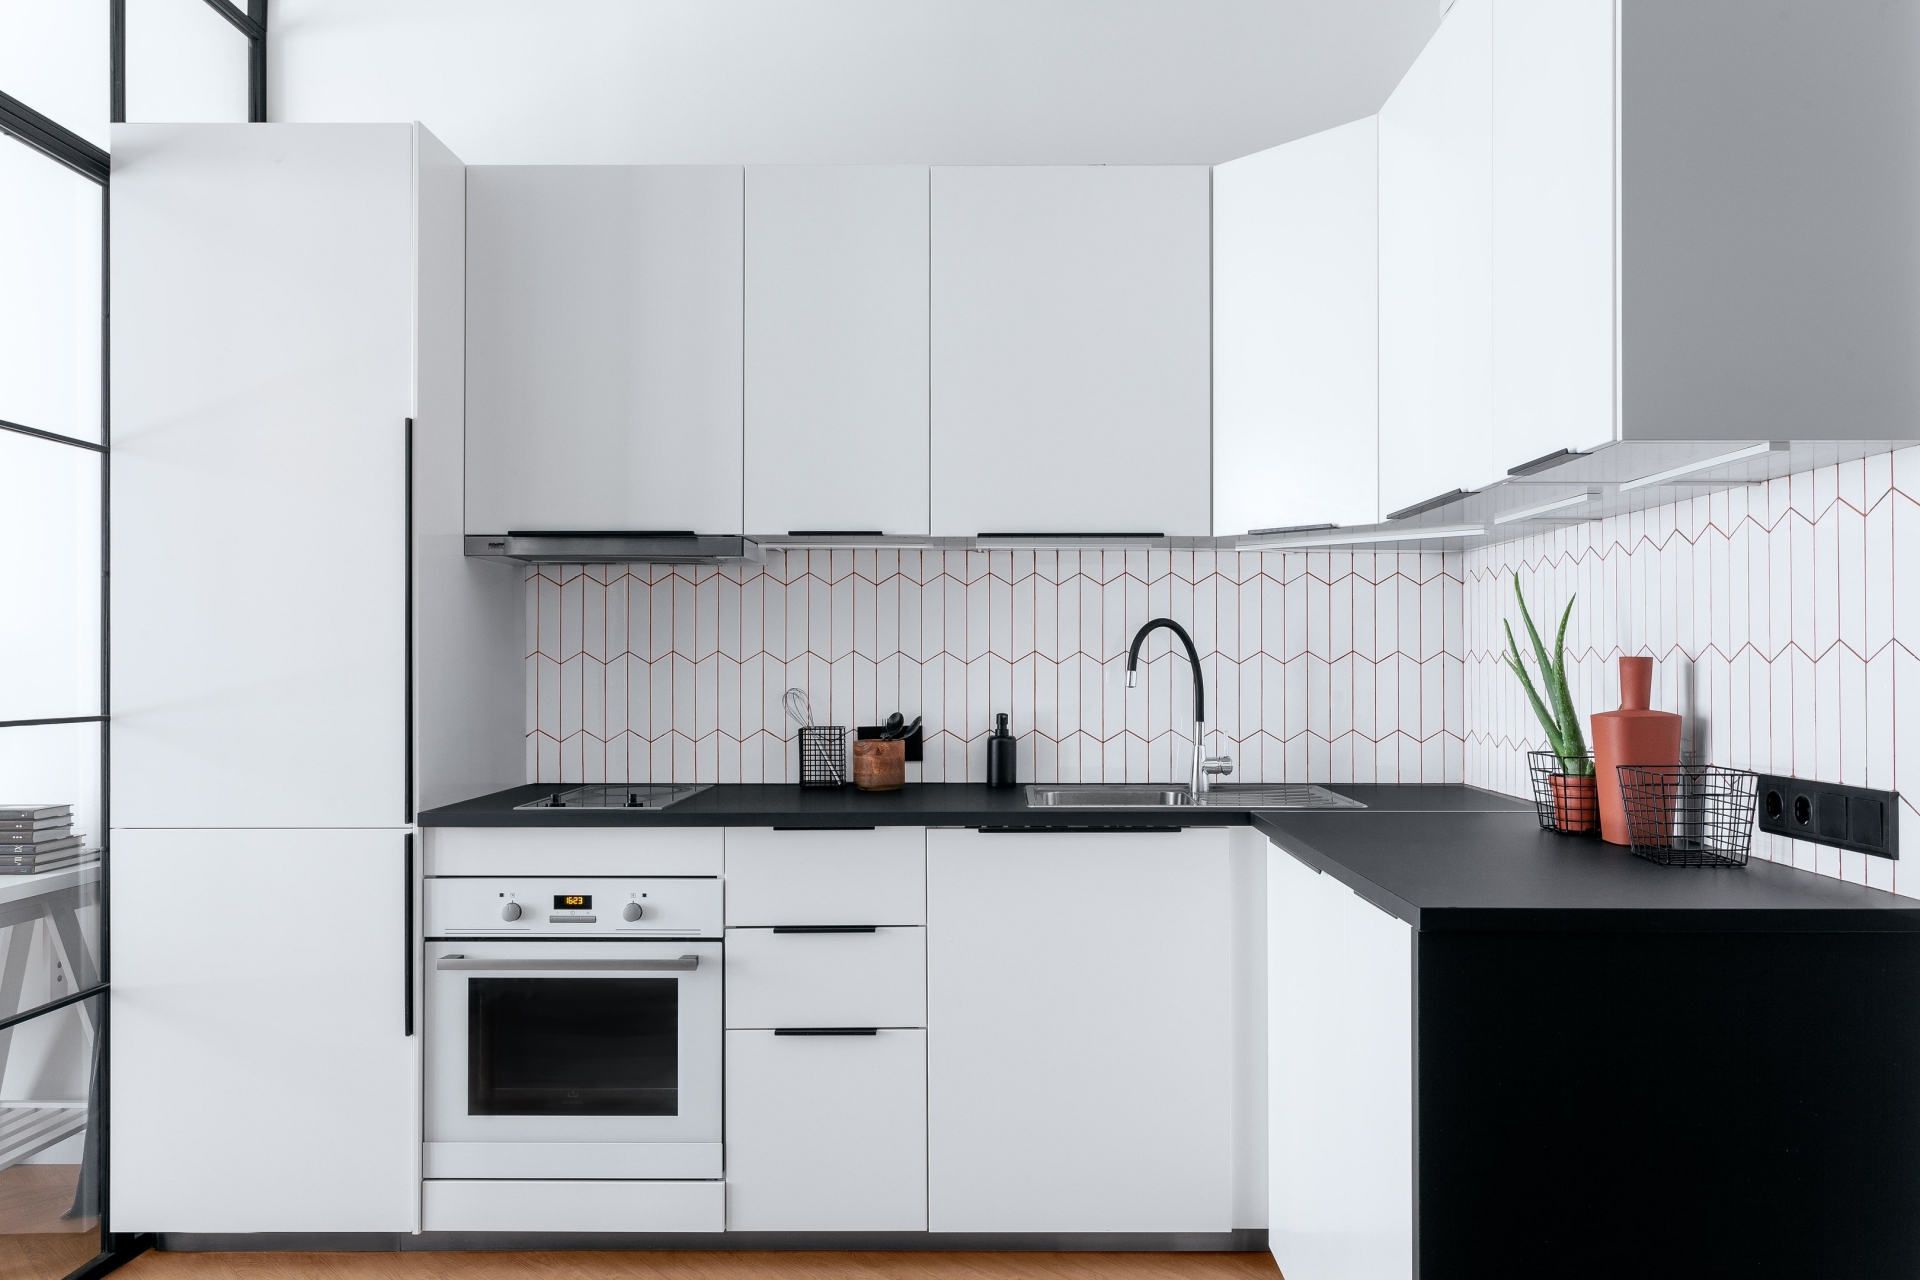 Khu vực phòng bếp lựa chọn thiết kế tủ chữ L, phù hợp với cấu trúc của căn hộ, đồng thời rất sang trọng nhờ sự kết hợp mặt bàn đá đen và tủ trắng cổ điển.